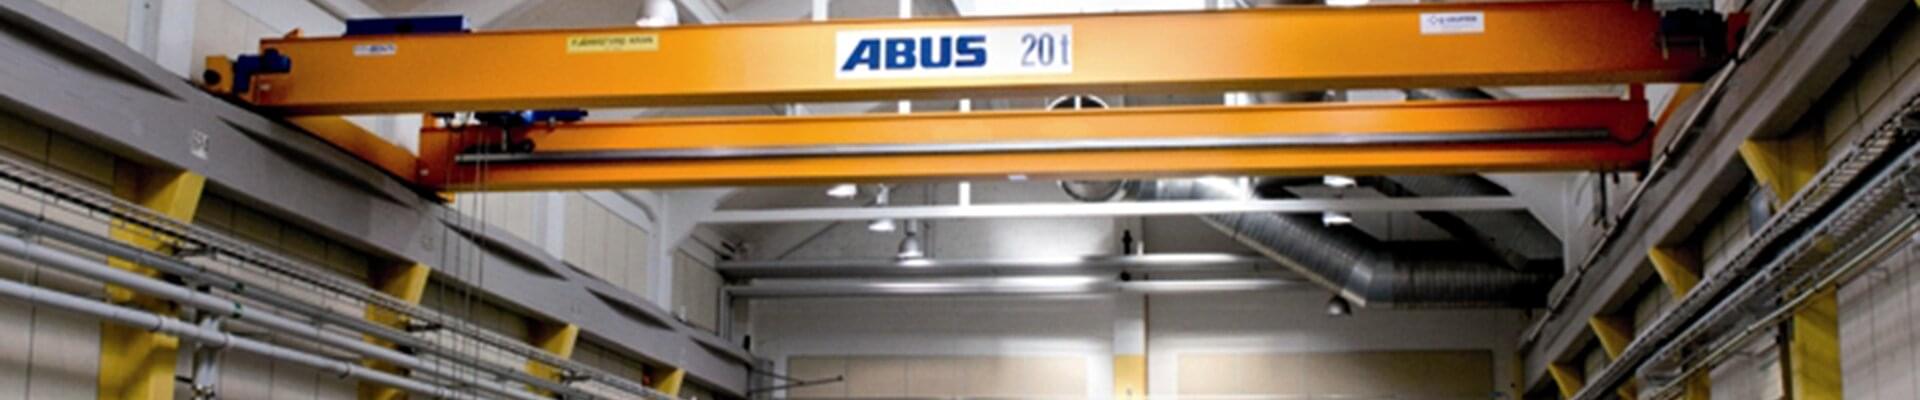 ABUS rullande kran med en lastkapacitet på 20 ton i en kulturminnesmärkt byggnad i Sverige 